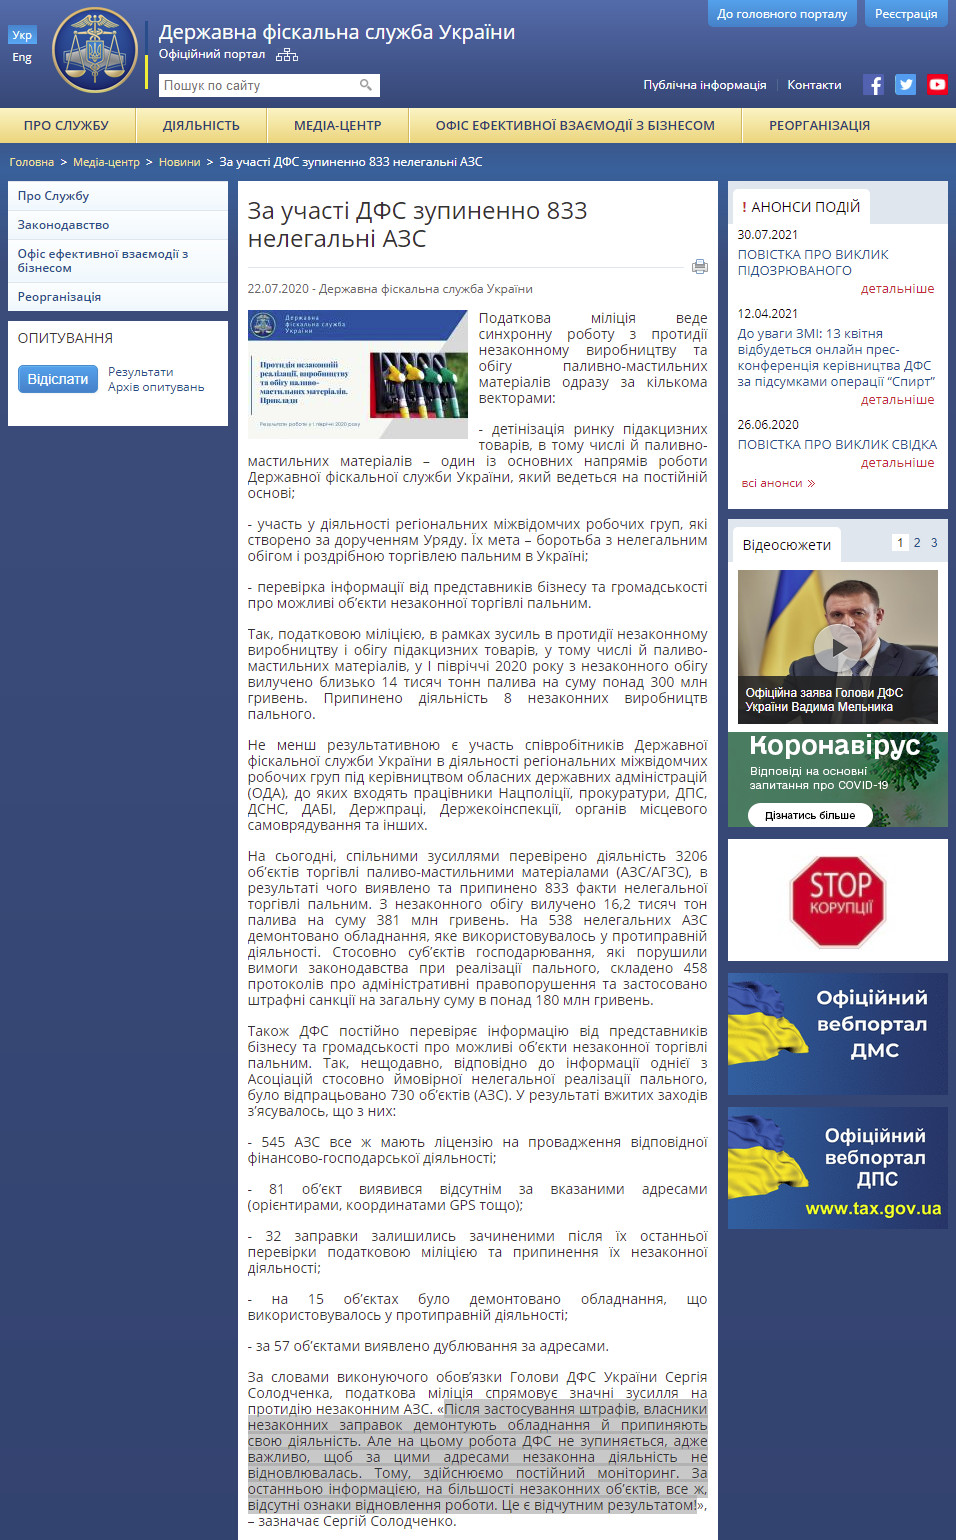 http://sfs.gov.ua/media-tsentr/novini/393654.html